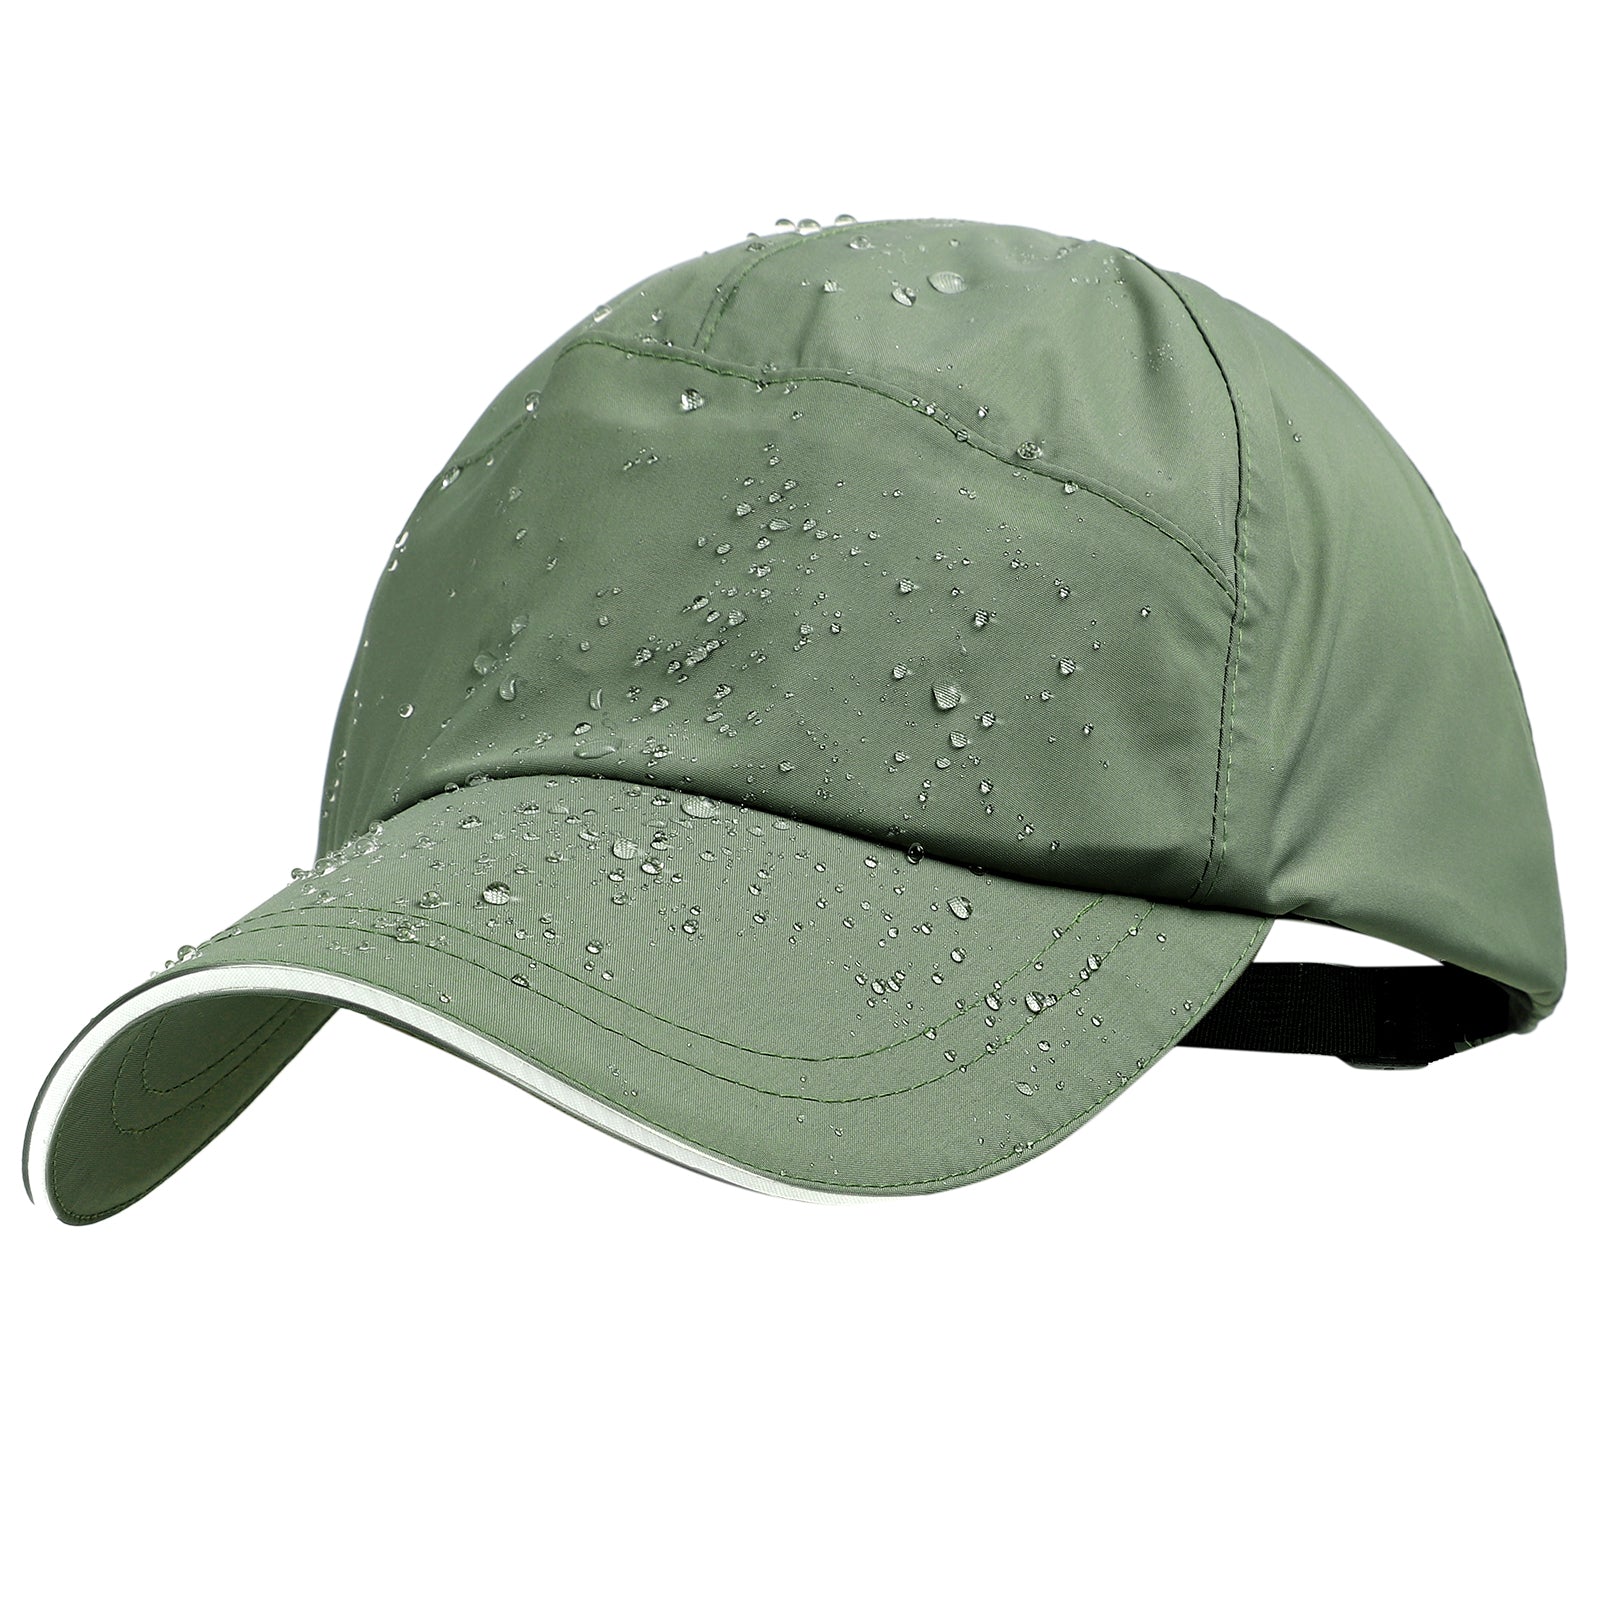 Waterproof Golf Baseball Cap